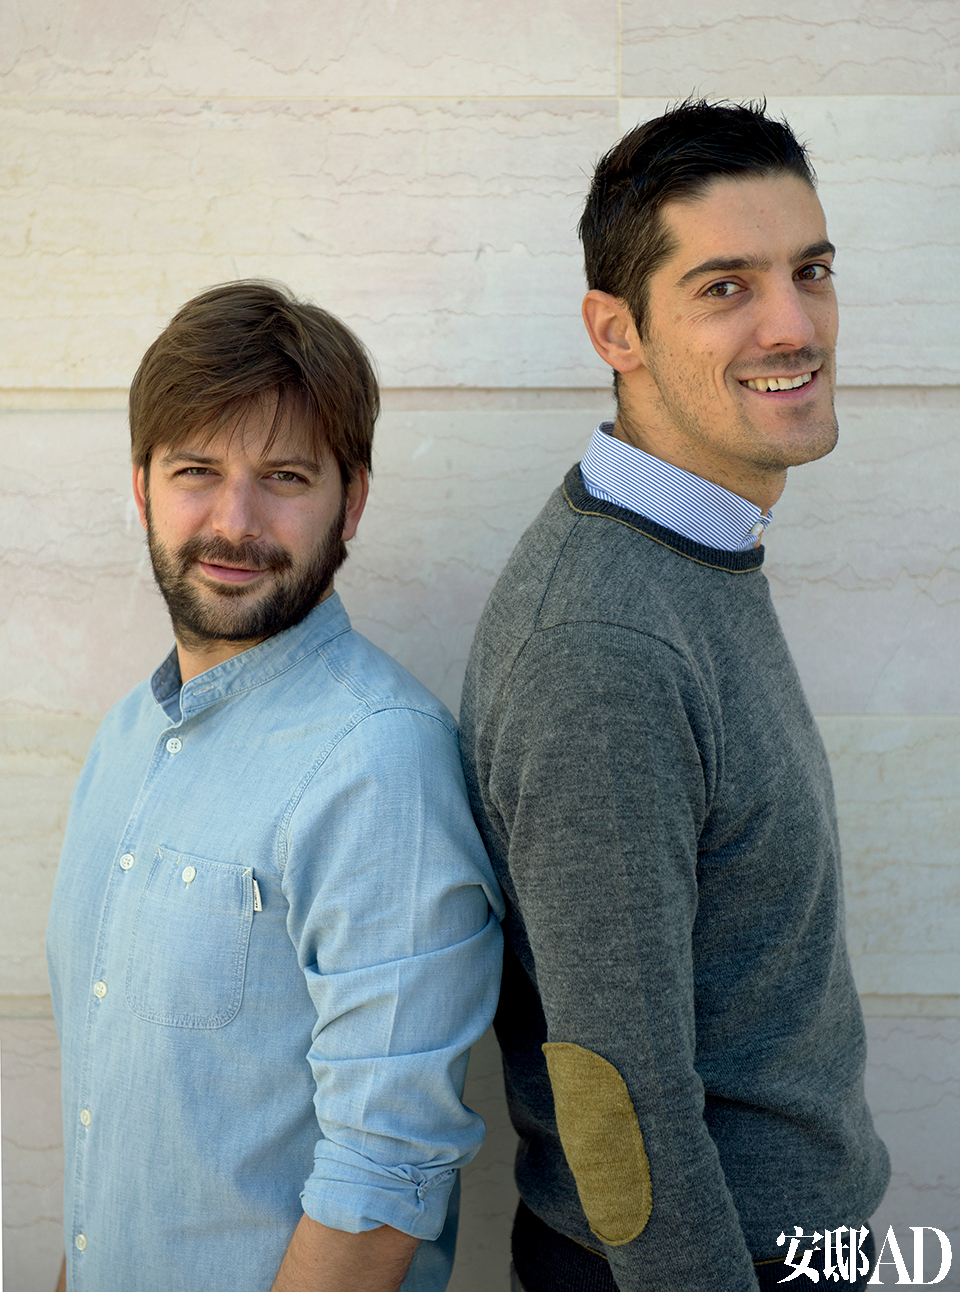 意大利设计师组合Marco Vincenti和Andrea Caturegli，两人均来自Studiovo公司。设计师: Marco Vinvent（i 左）和Andrea Caturegl（i 右），他们二人分
别毕业于佛罗伦萨的建筑学院和米兰的POLI设计学院，曾供职于世界知名的设计公司。2010年，他们回到家乡Lucca，共同成立了设计公司Studiovo，主要经营室内设计和产品设计。Marco和Andra二人联手设计了这间充满魅力和诗意的公寓，在意大利老城的市中心融合了古老和现代的旋律。公寓“颂歌”120平方米的空间包括室内部分和露台，在露台上可以俯瞰整座城市360度的景色。